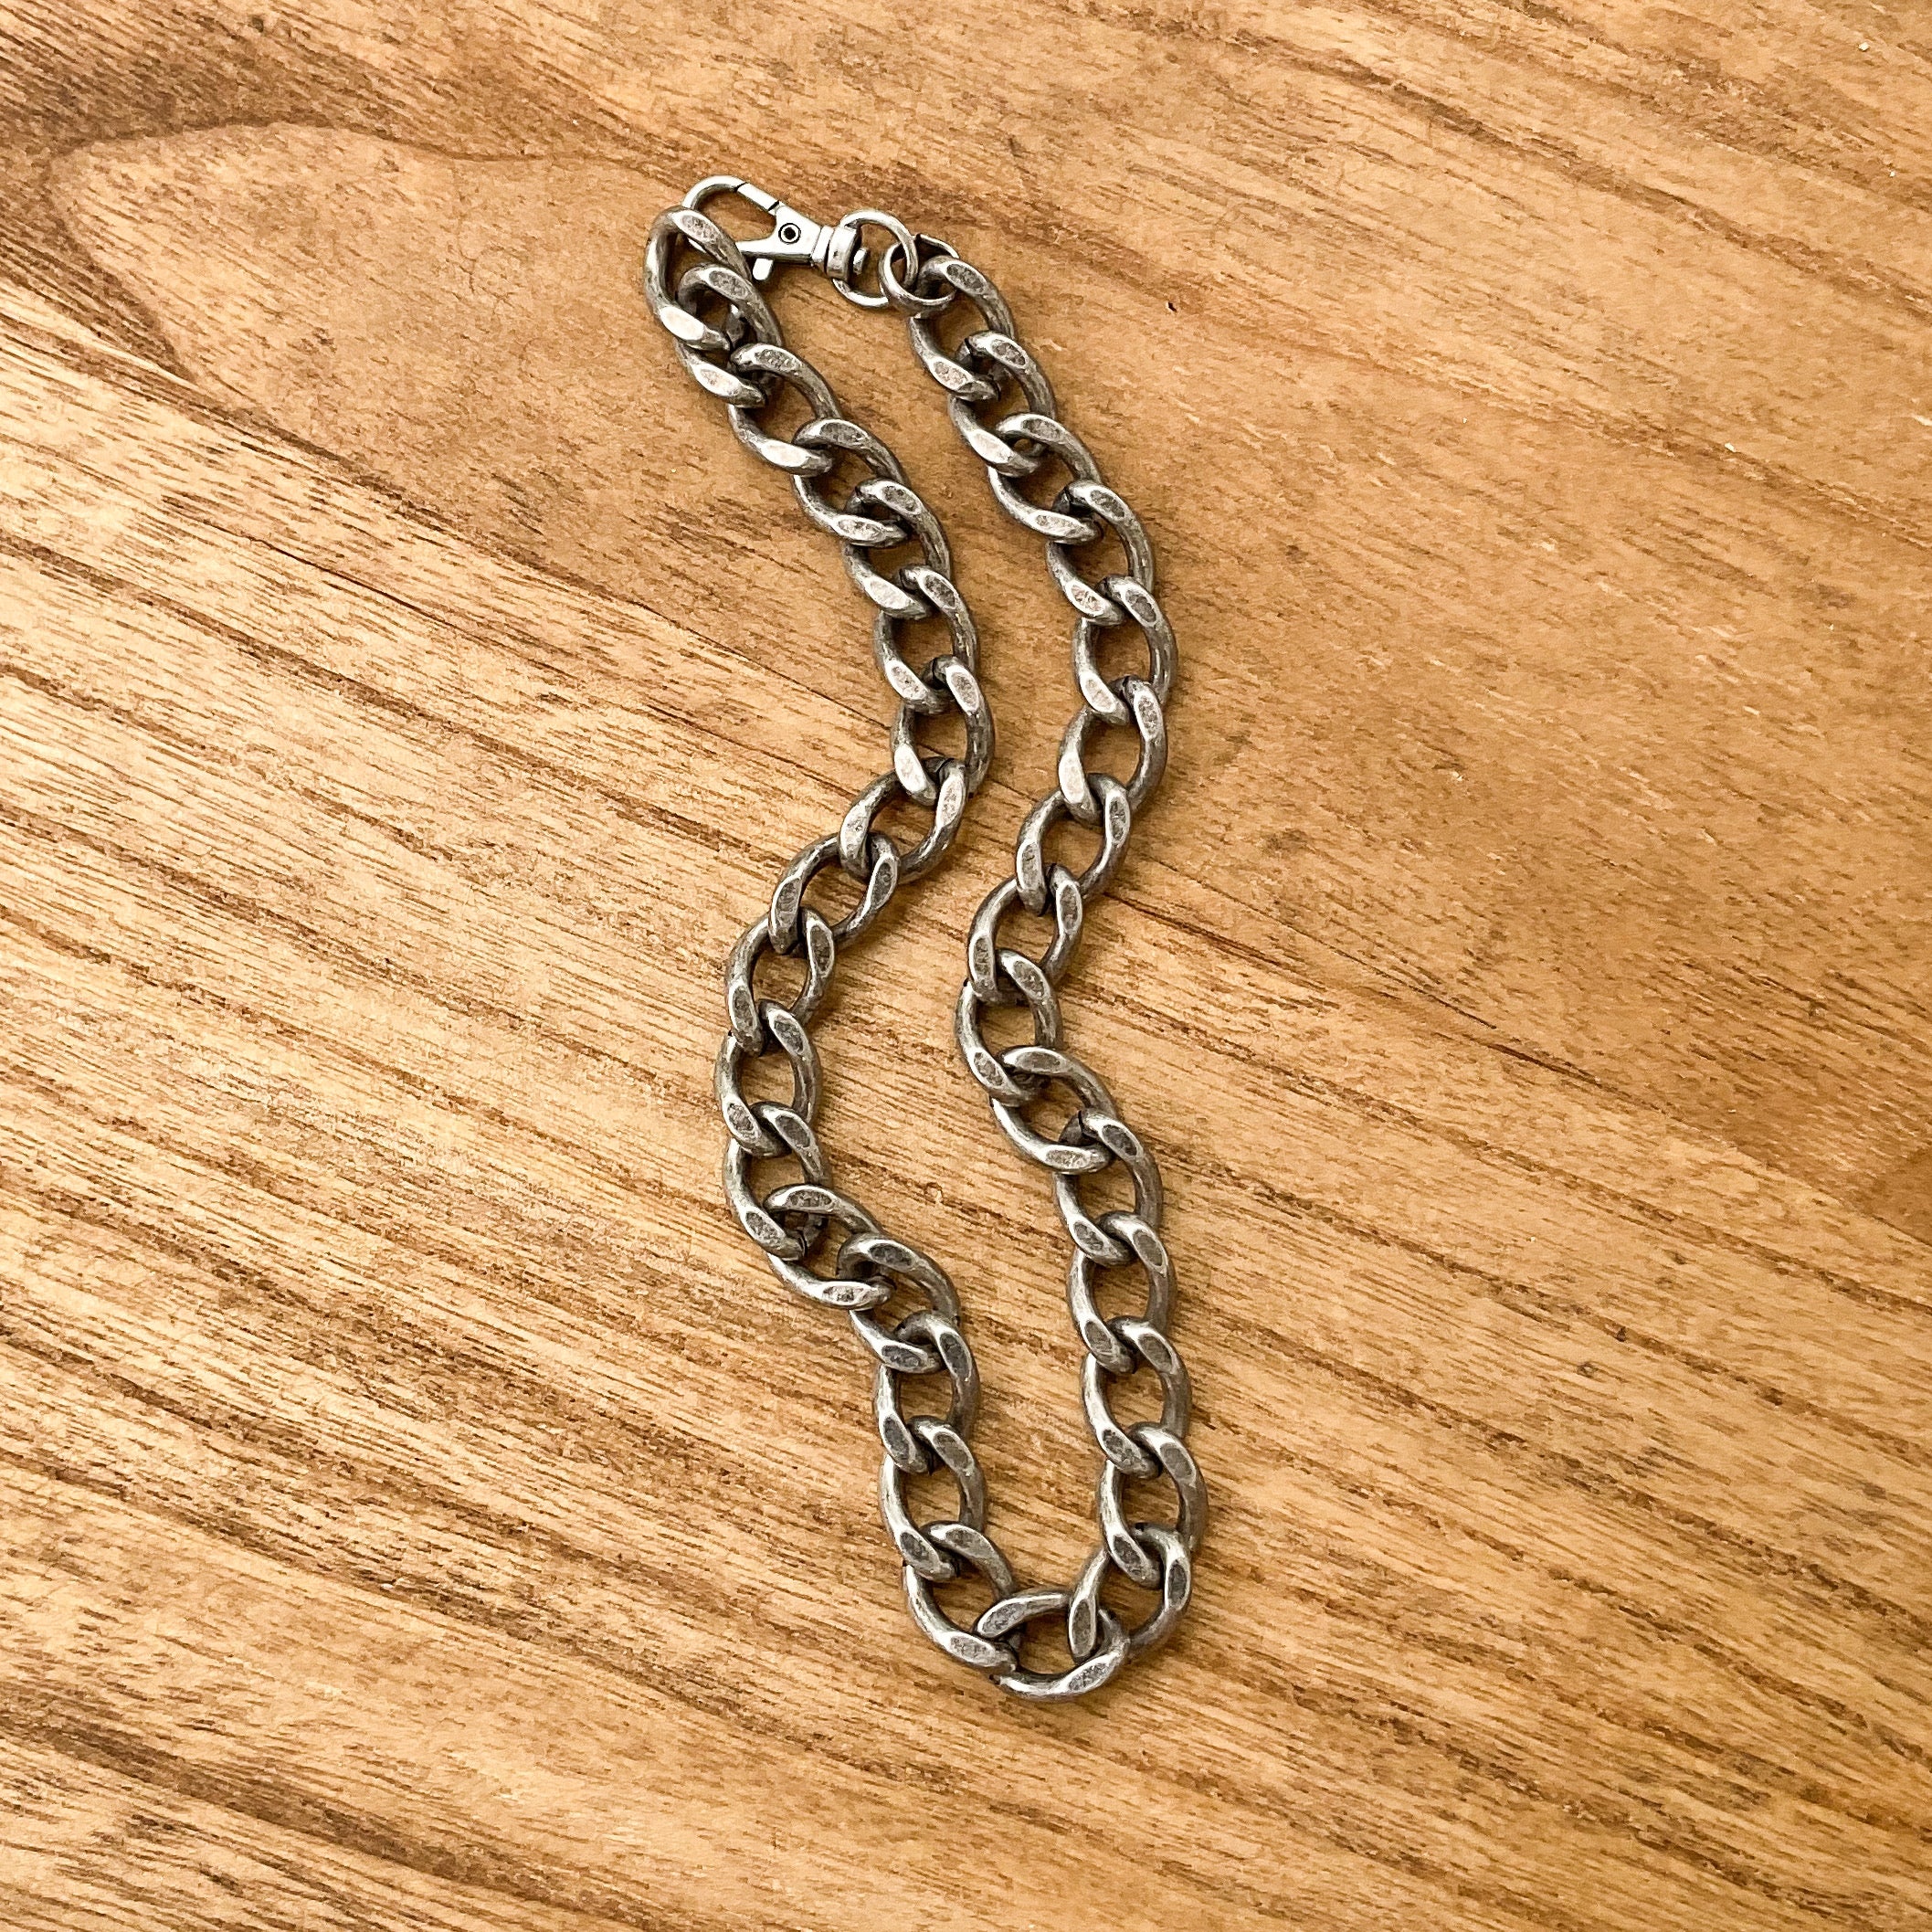 XL Curb Chain Choker